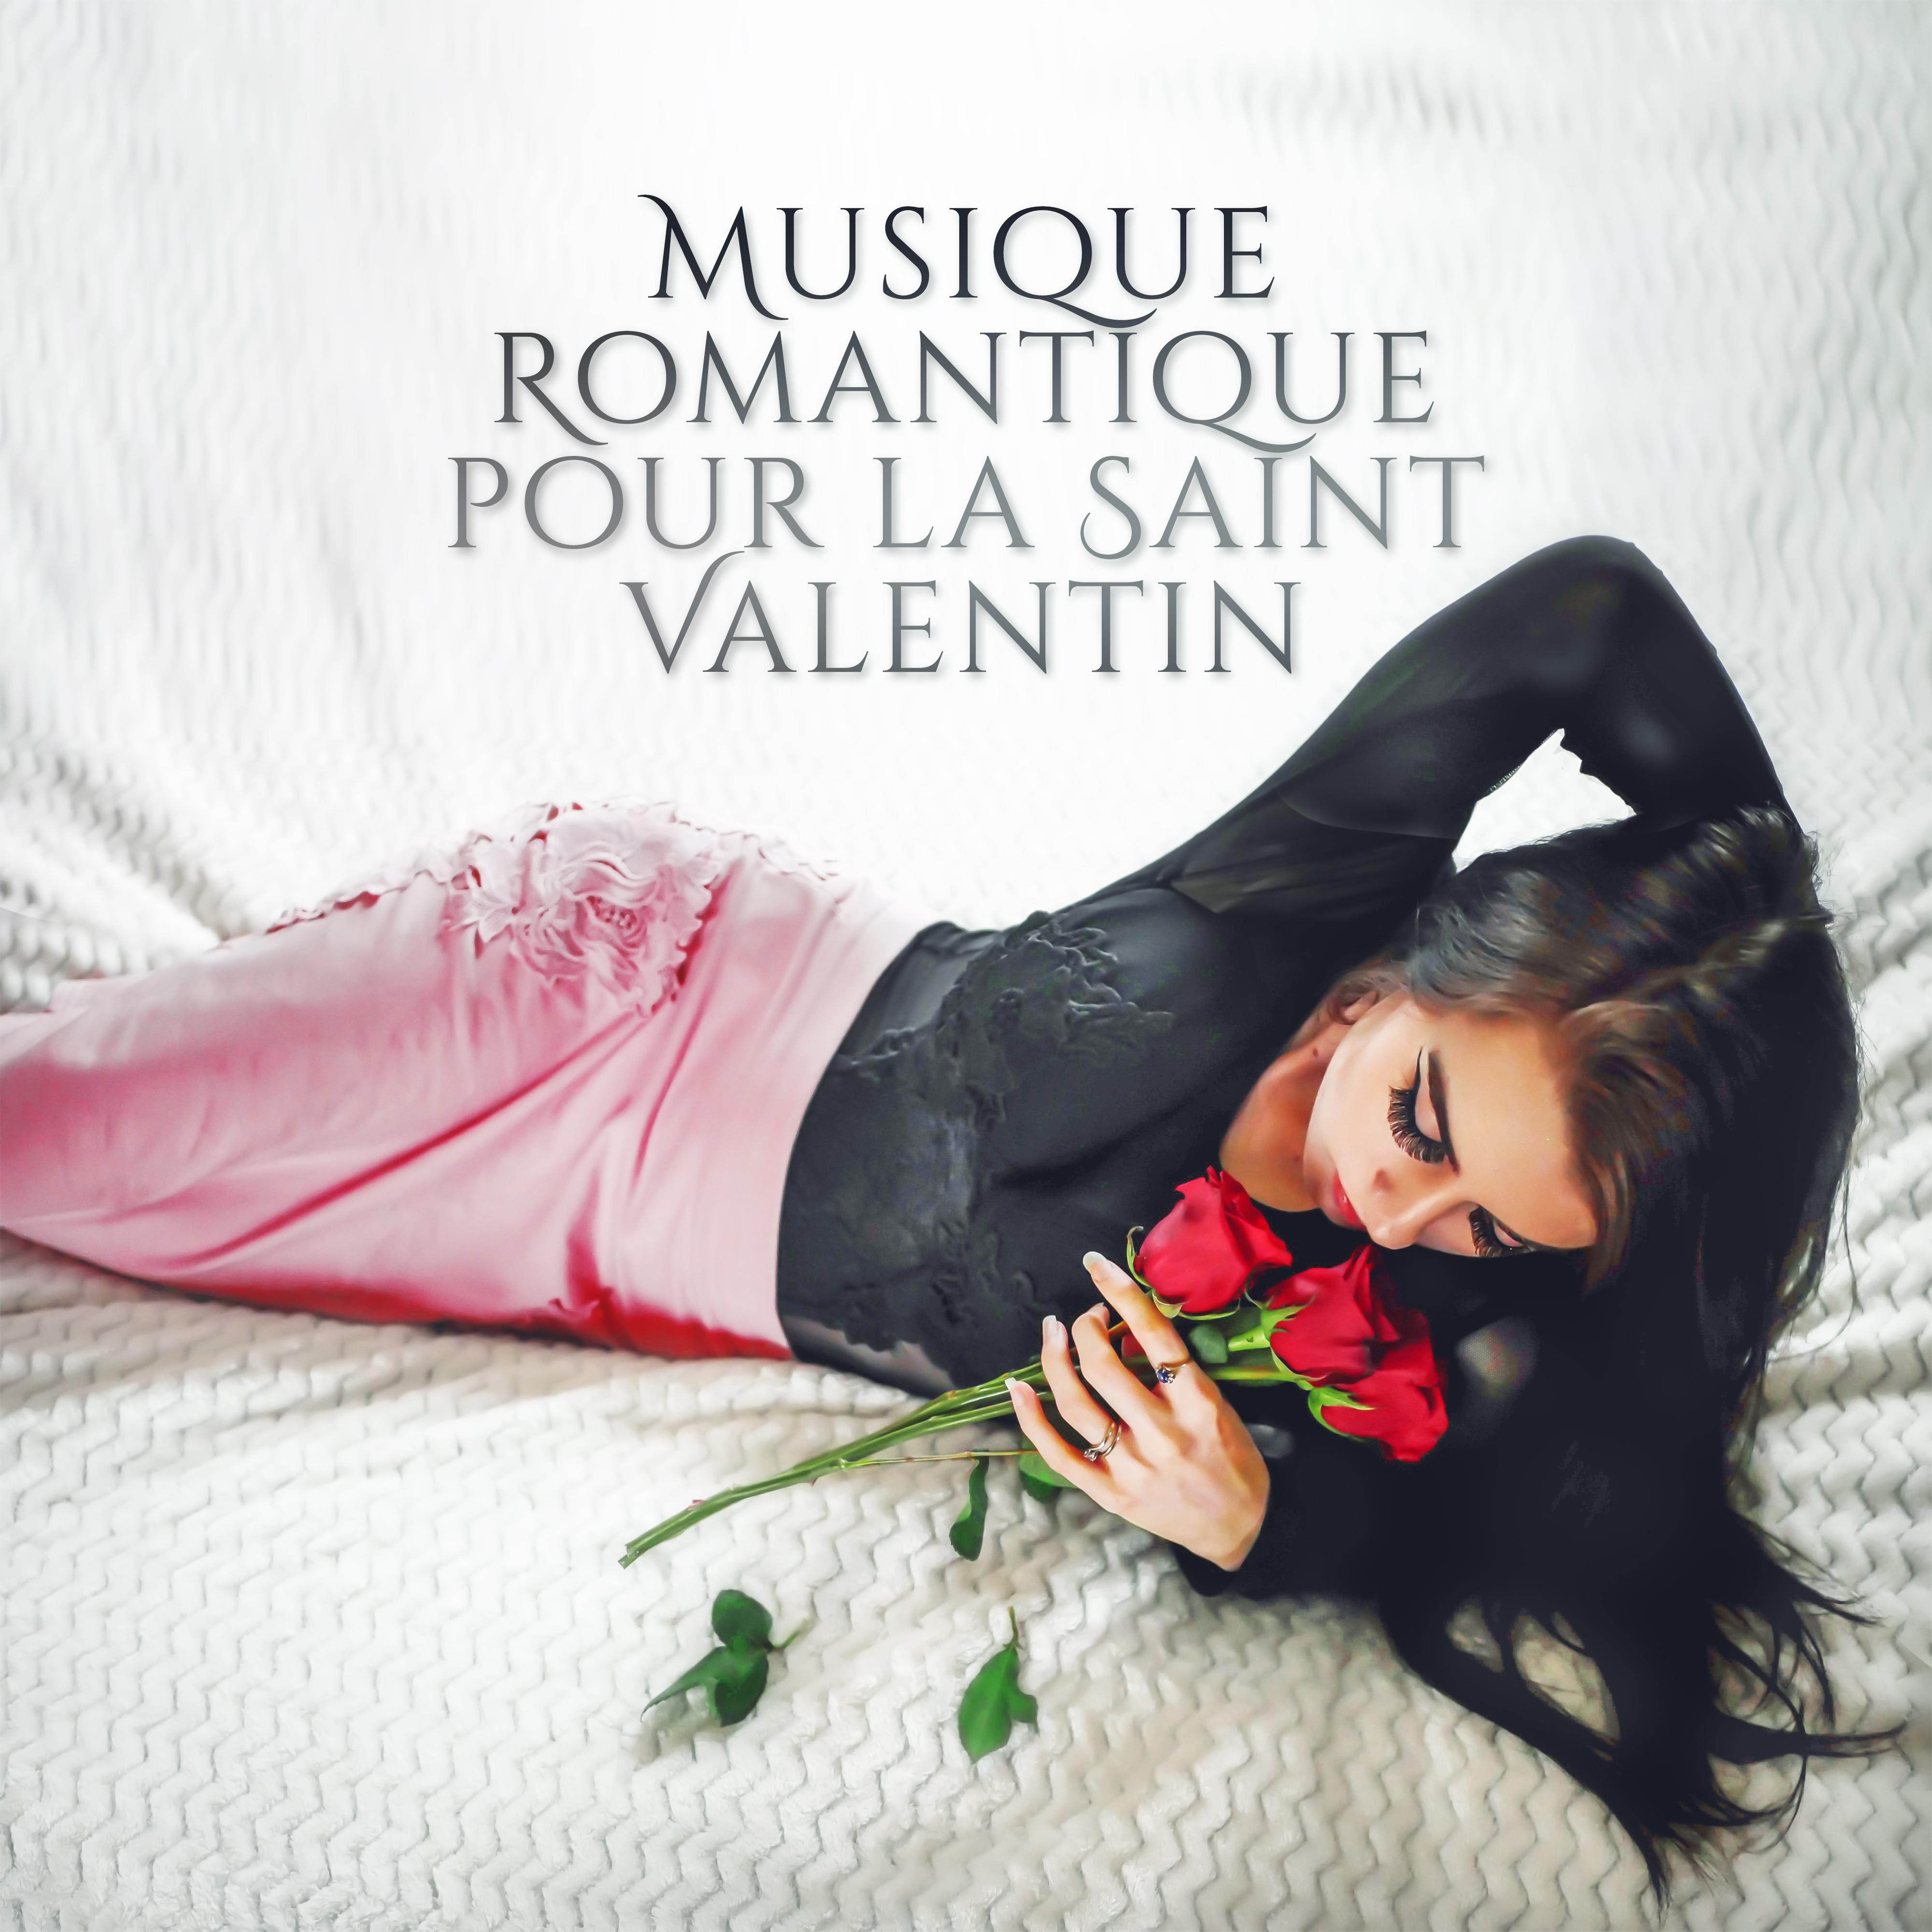 Musique Romantique pour la Saint Valentin